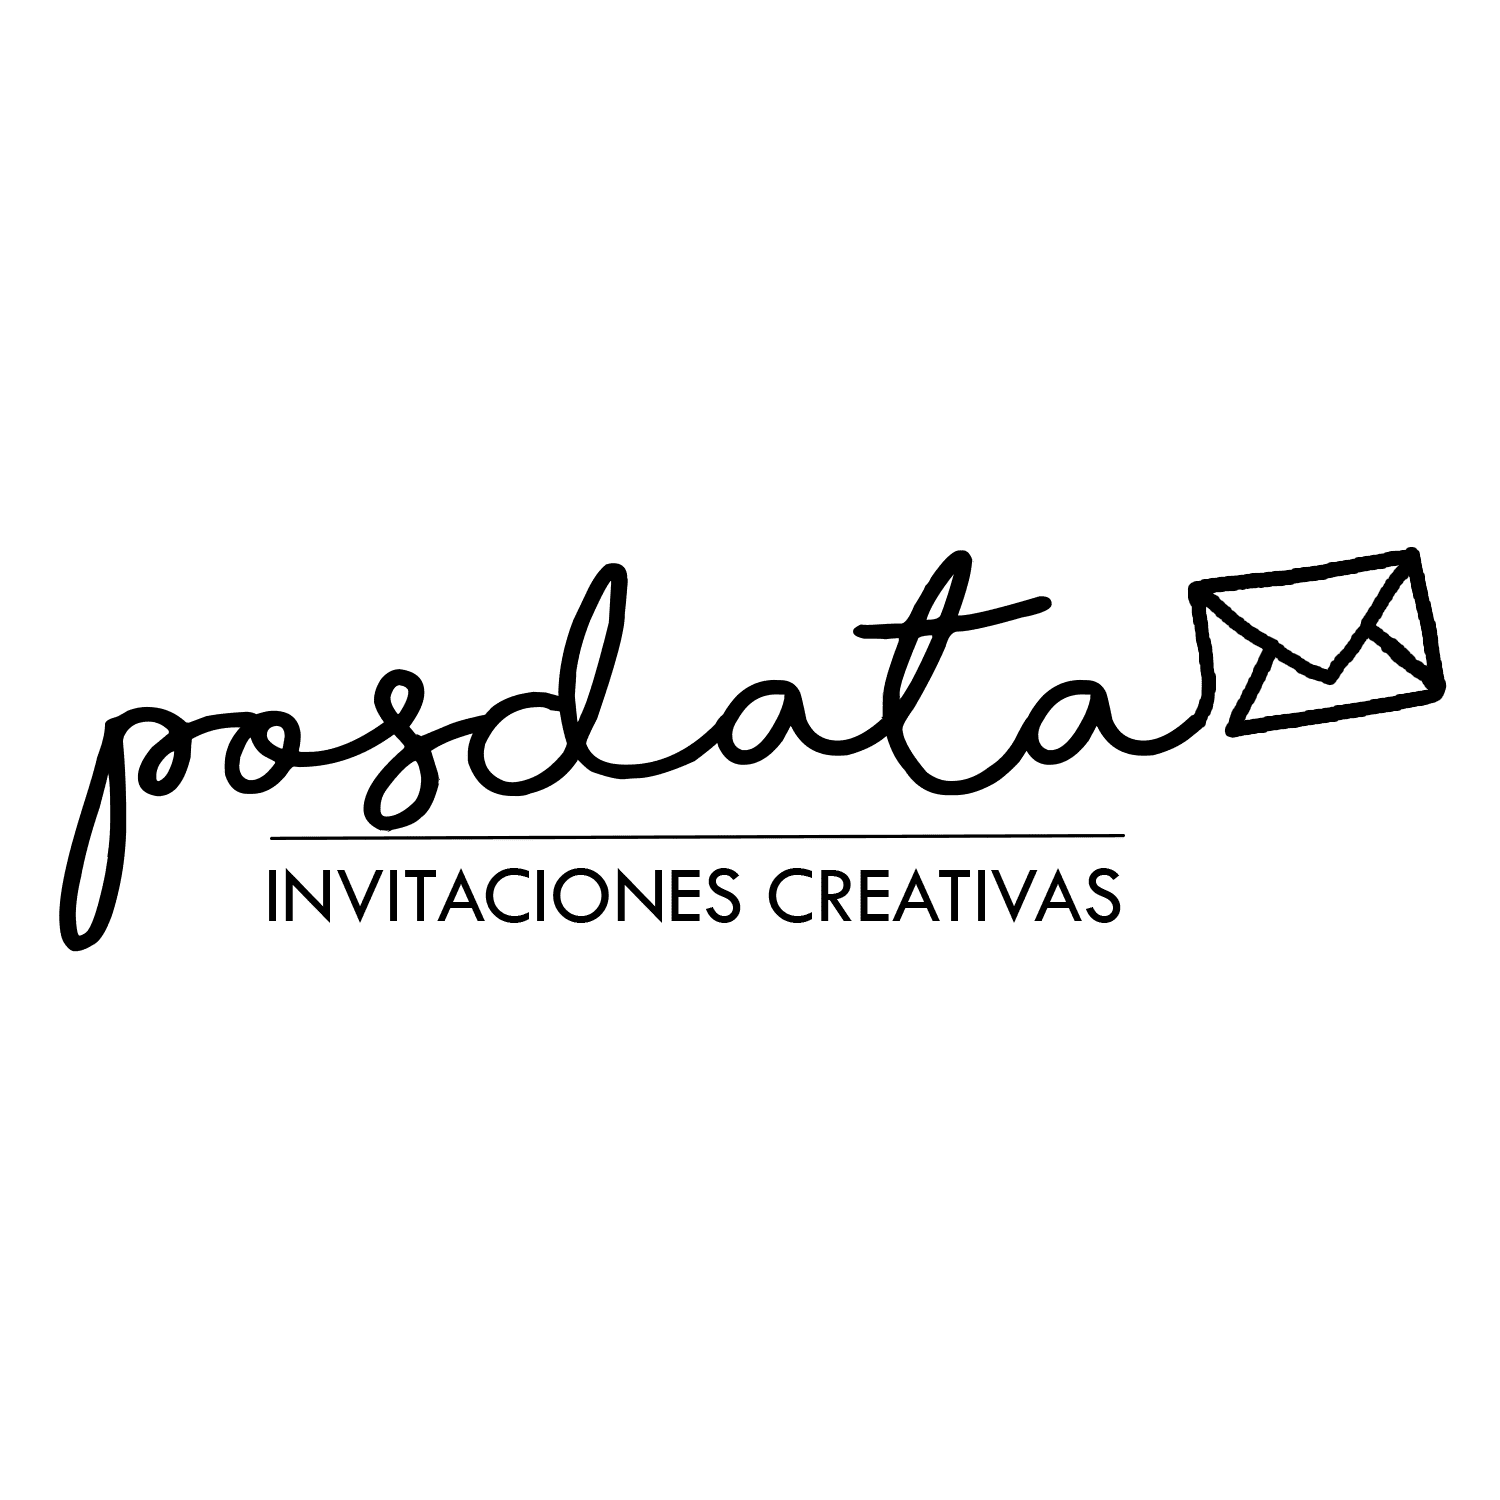 Posdata Invitaciones Creativas